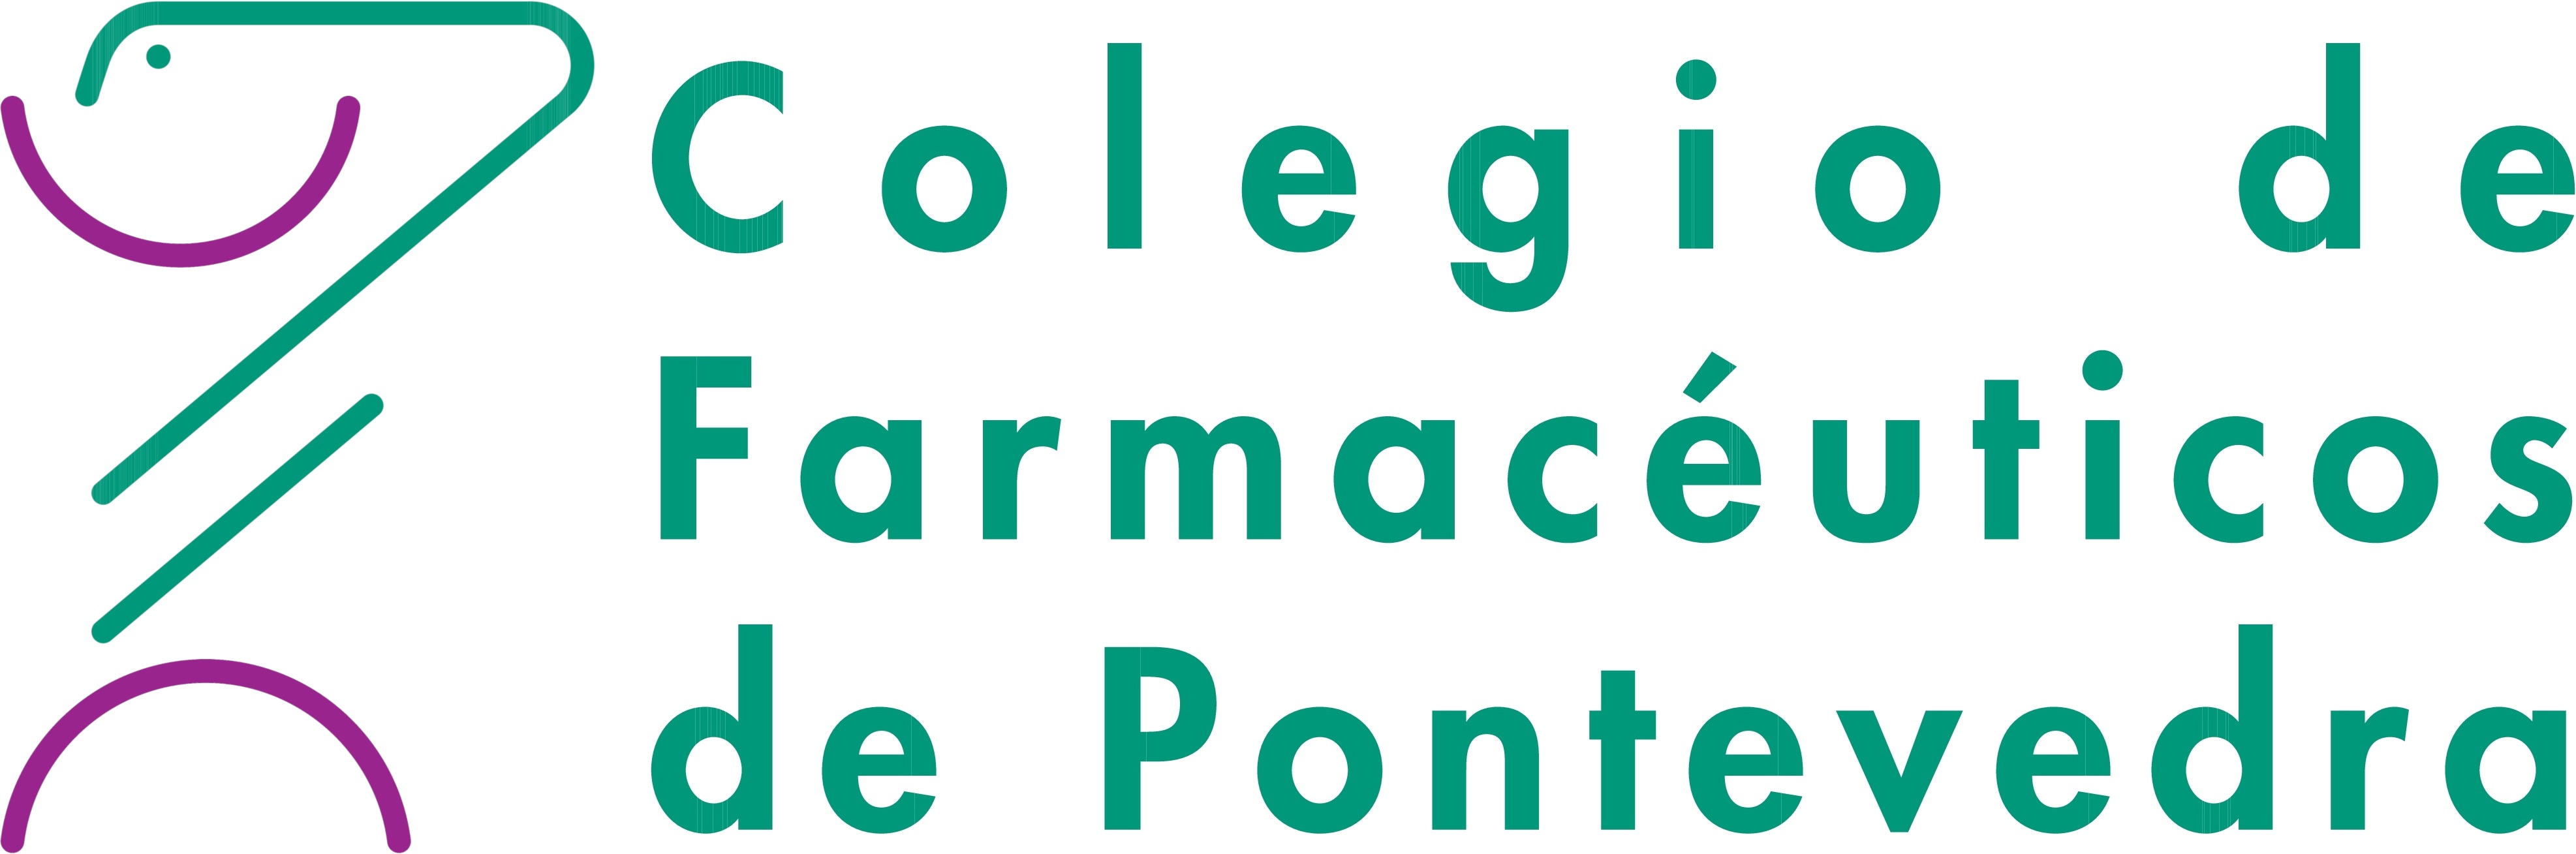 Fin del Cribado Poblacional en farmacias de Pontevedra y agradecimiento del Conselleiro de Sanidad a los farmacéuticos participantes - Colegio de Farmacéuticos de Pontevedra